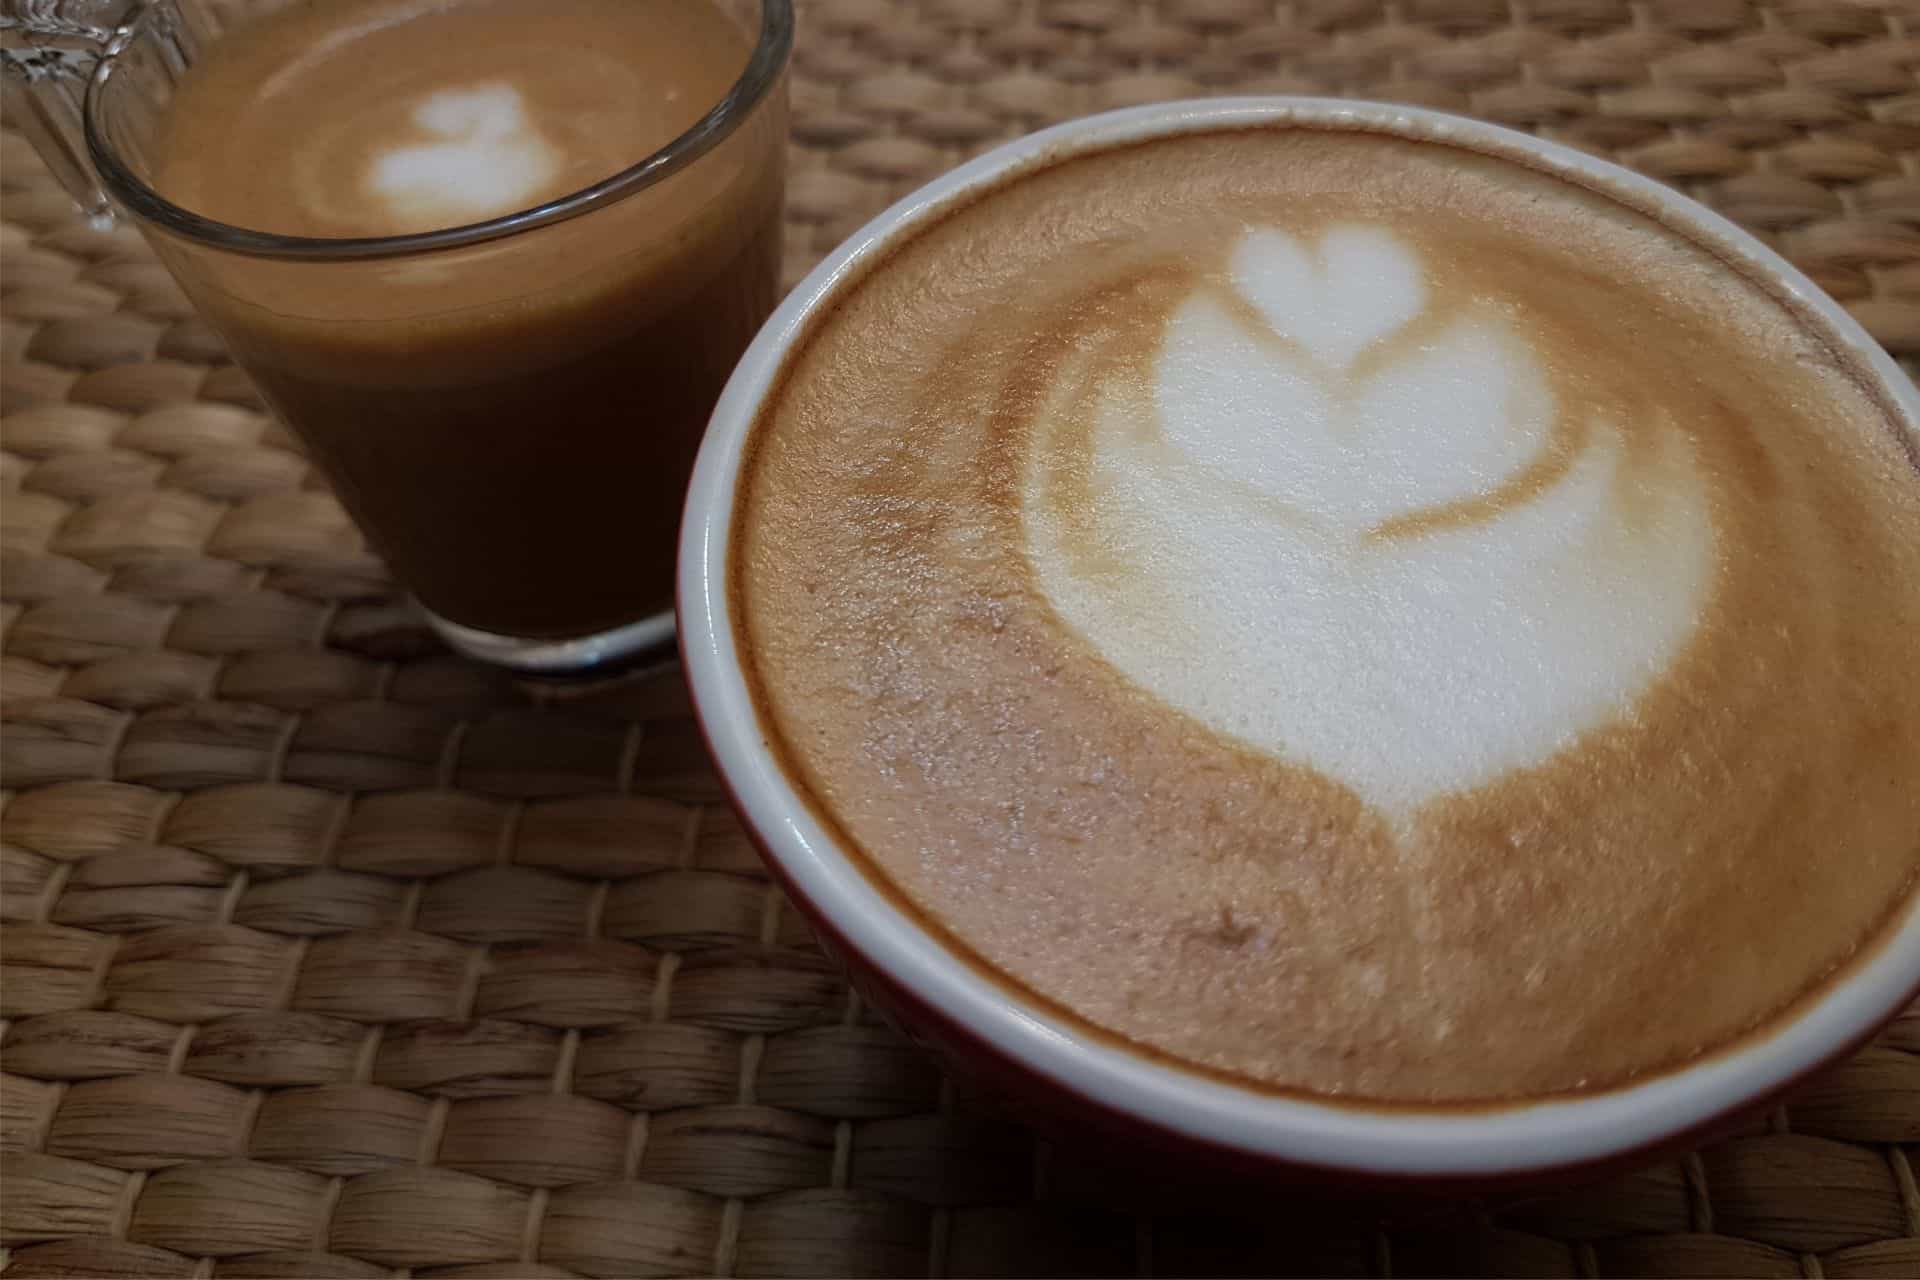 Latte art - am barista vending